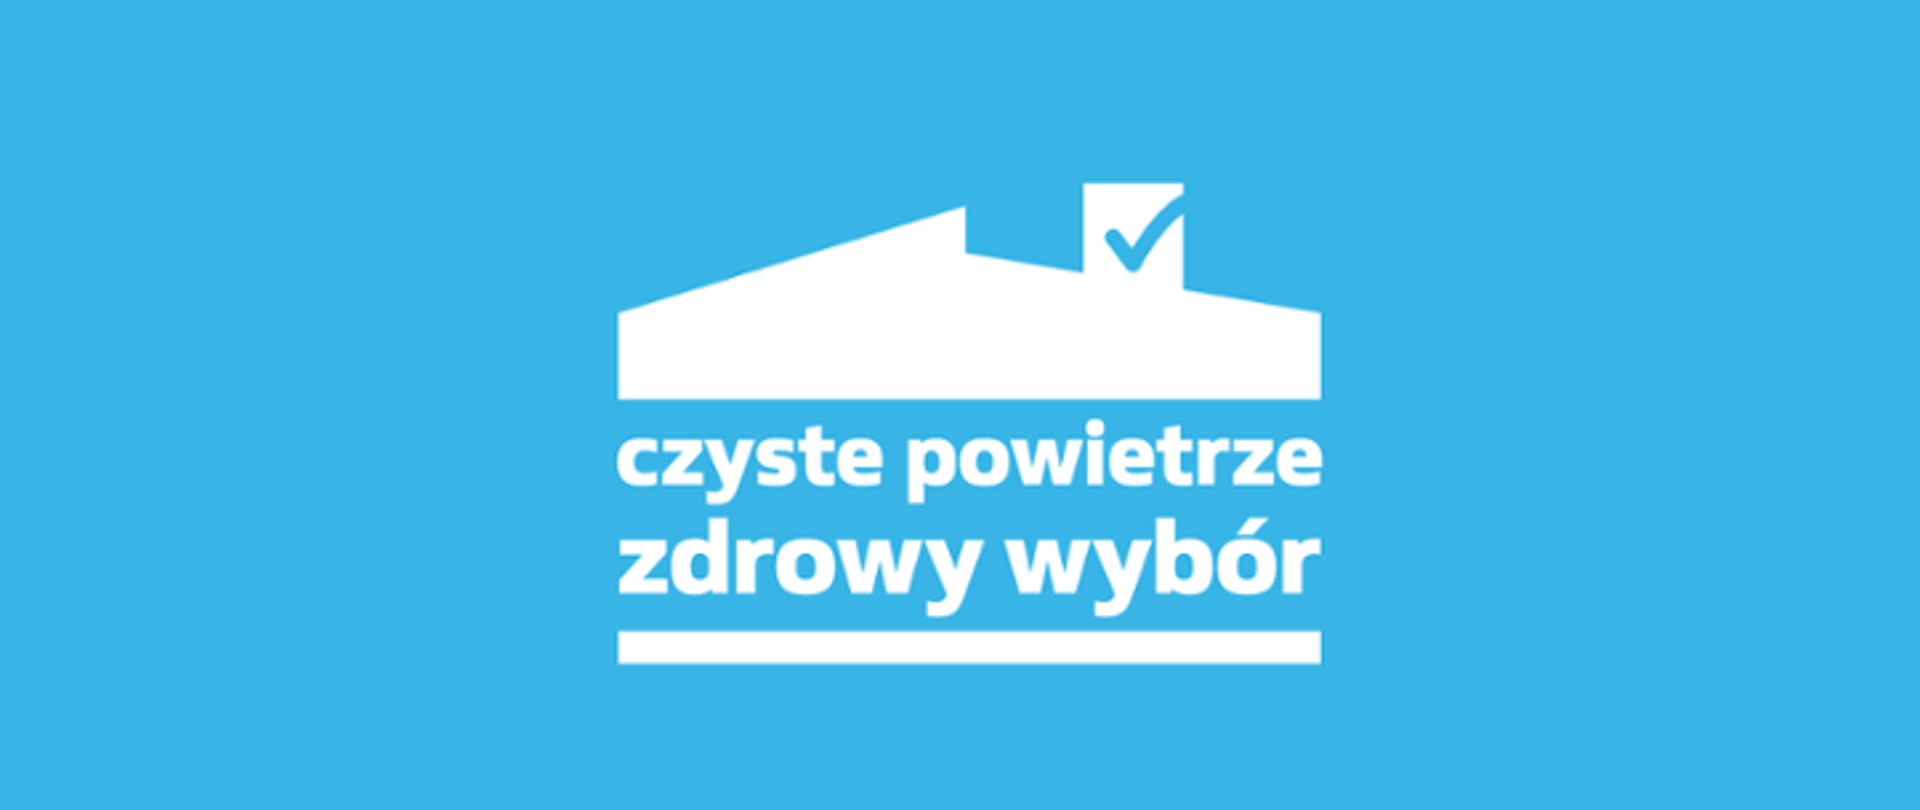 Logo programu Czyste Powietrze - biała grafika na błękitnym tle, zarys budynku z wyeksponowanym kominem i wpisanym weń hasłem czyste powietrze zdrowy wybór.